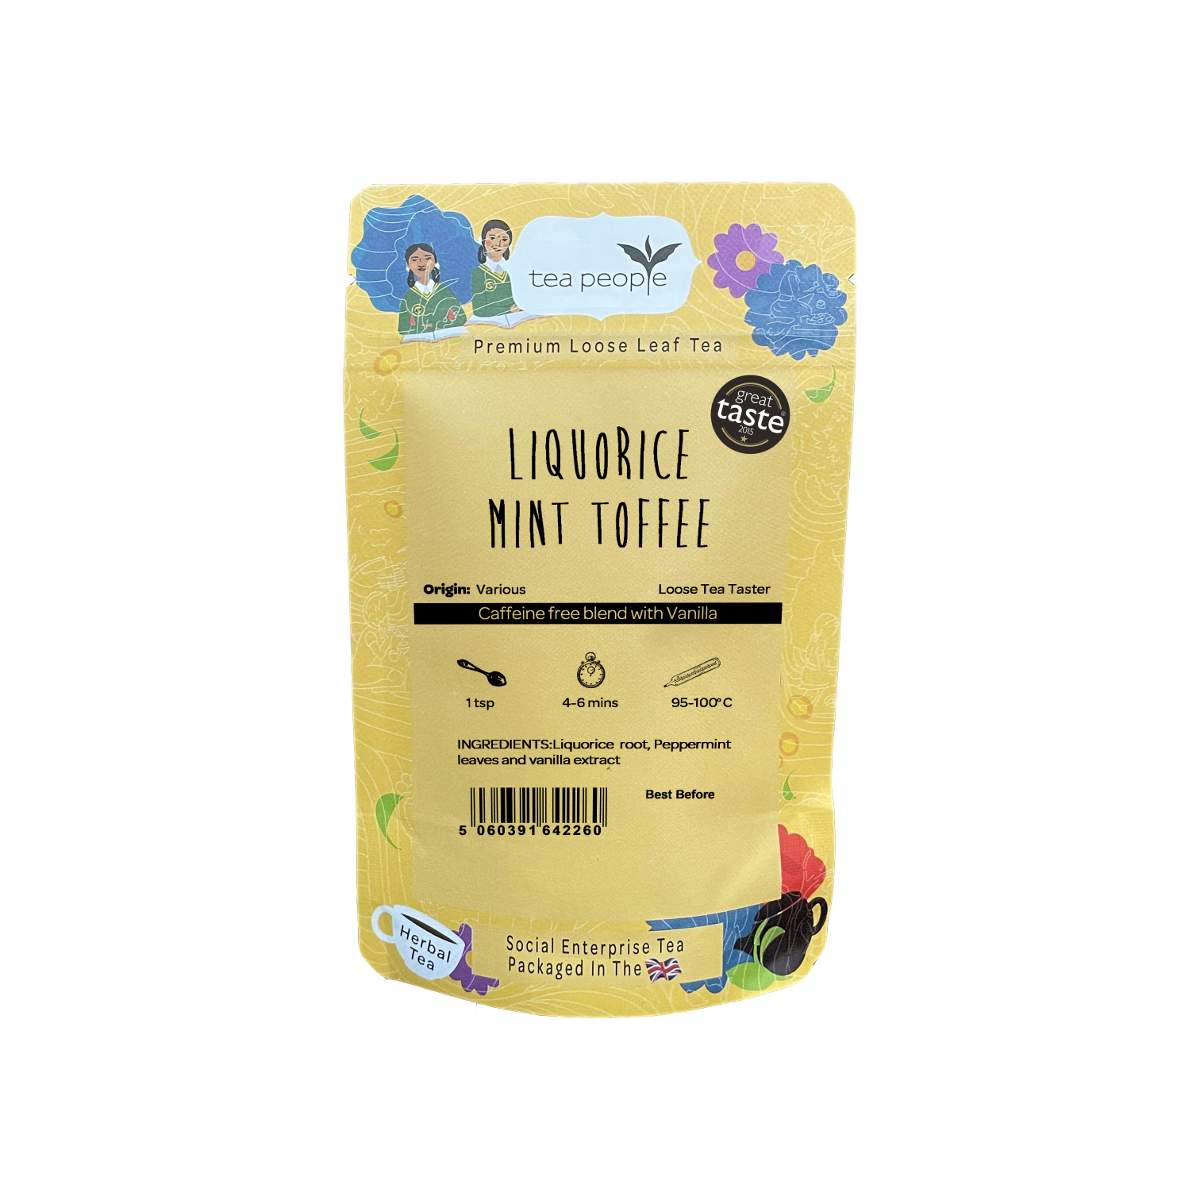 Liquorice Mint Toffee - Loose Herbal Tea - Loose Tea Taster Pack